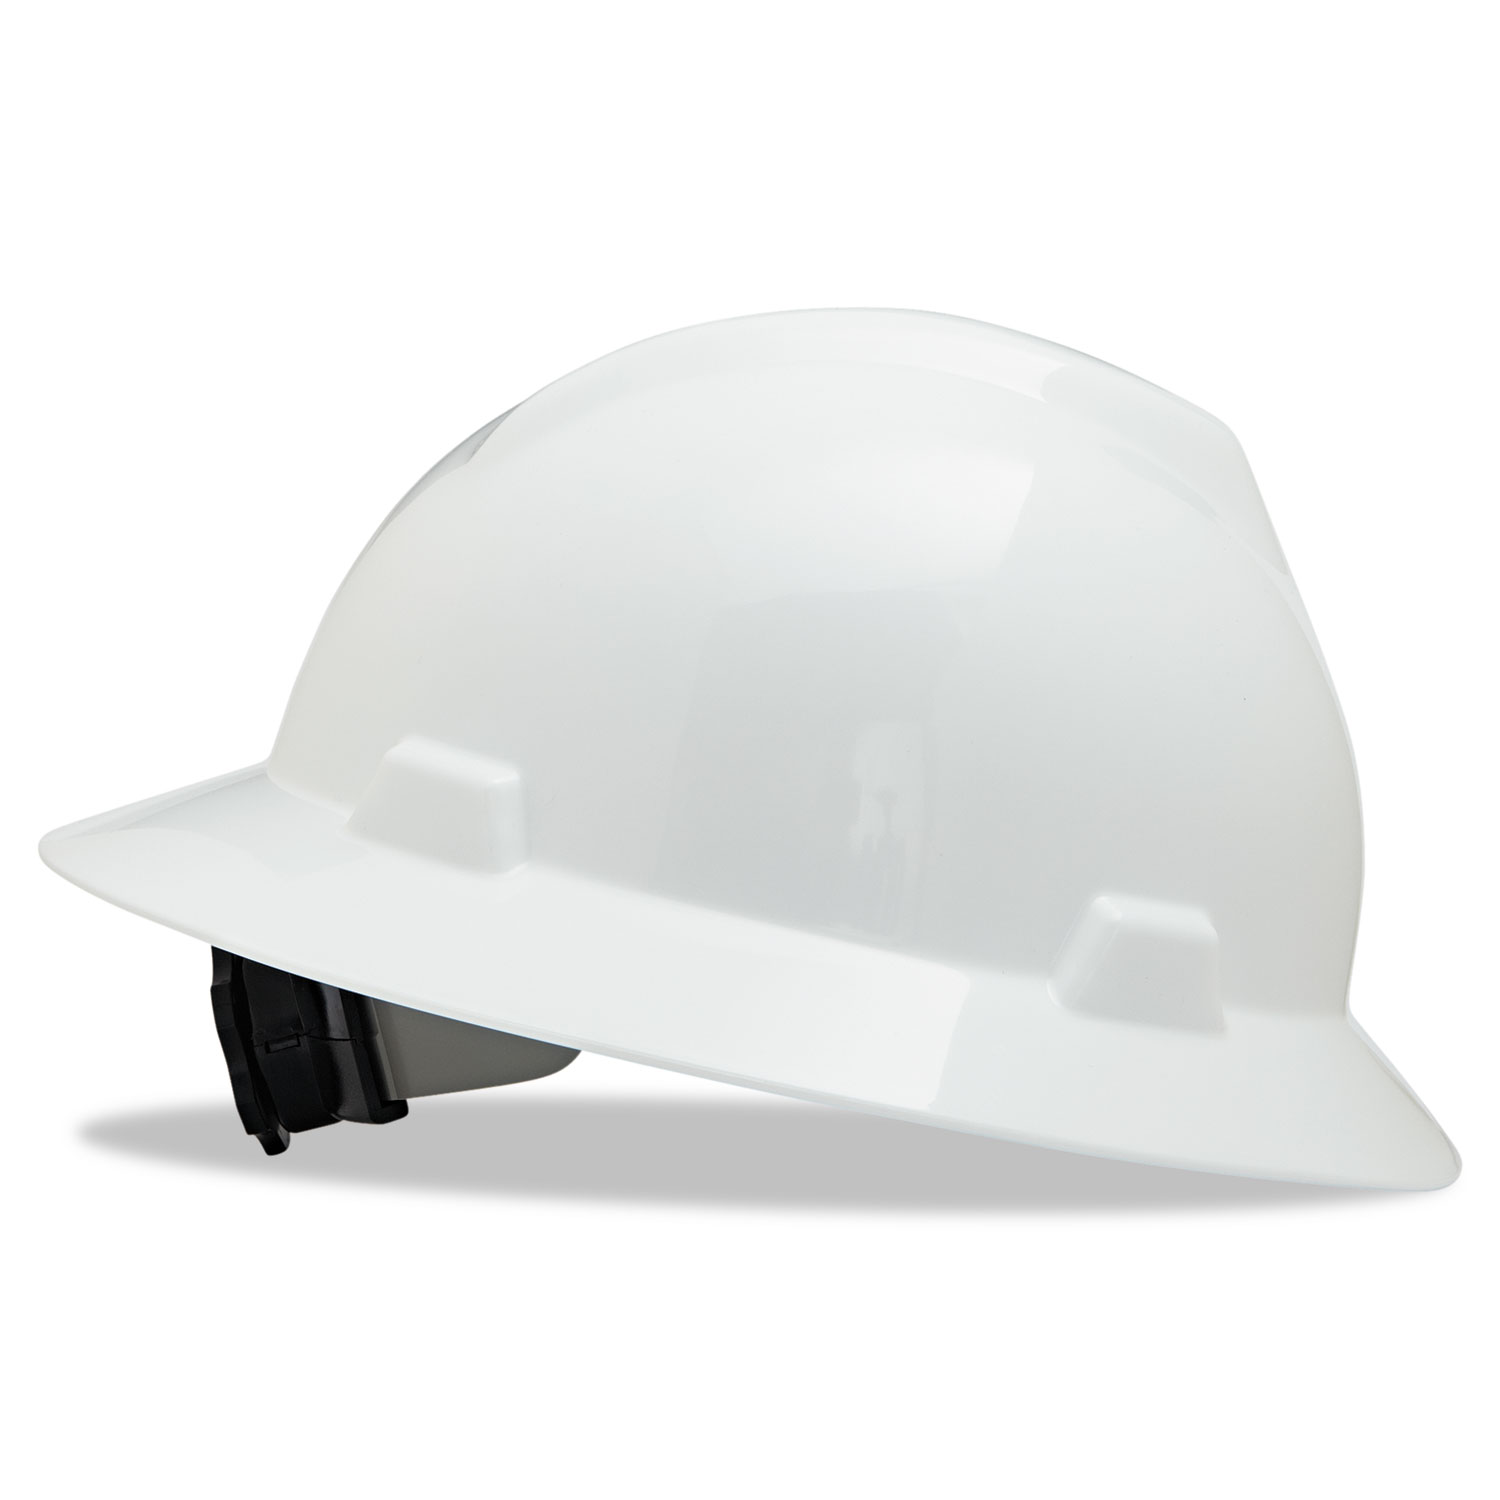  MSA 475369 V-Gard Full-Brim Hard Hats, Ratchet Suspension, Size 6 1/2 - 8, White (MSA475369) 